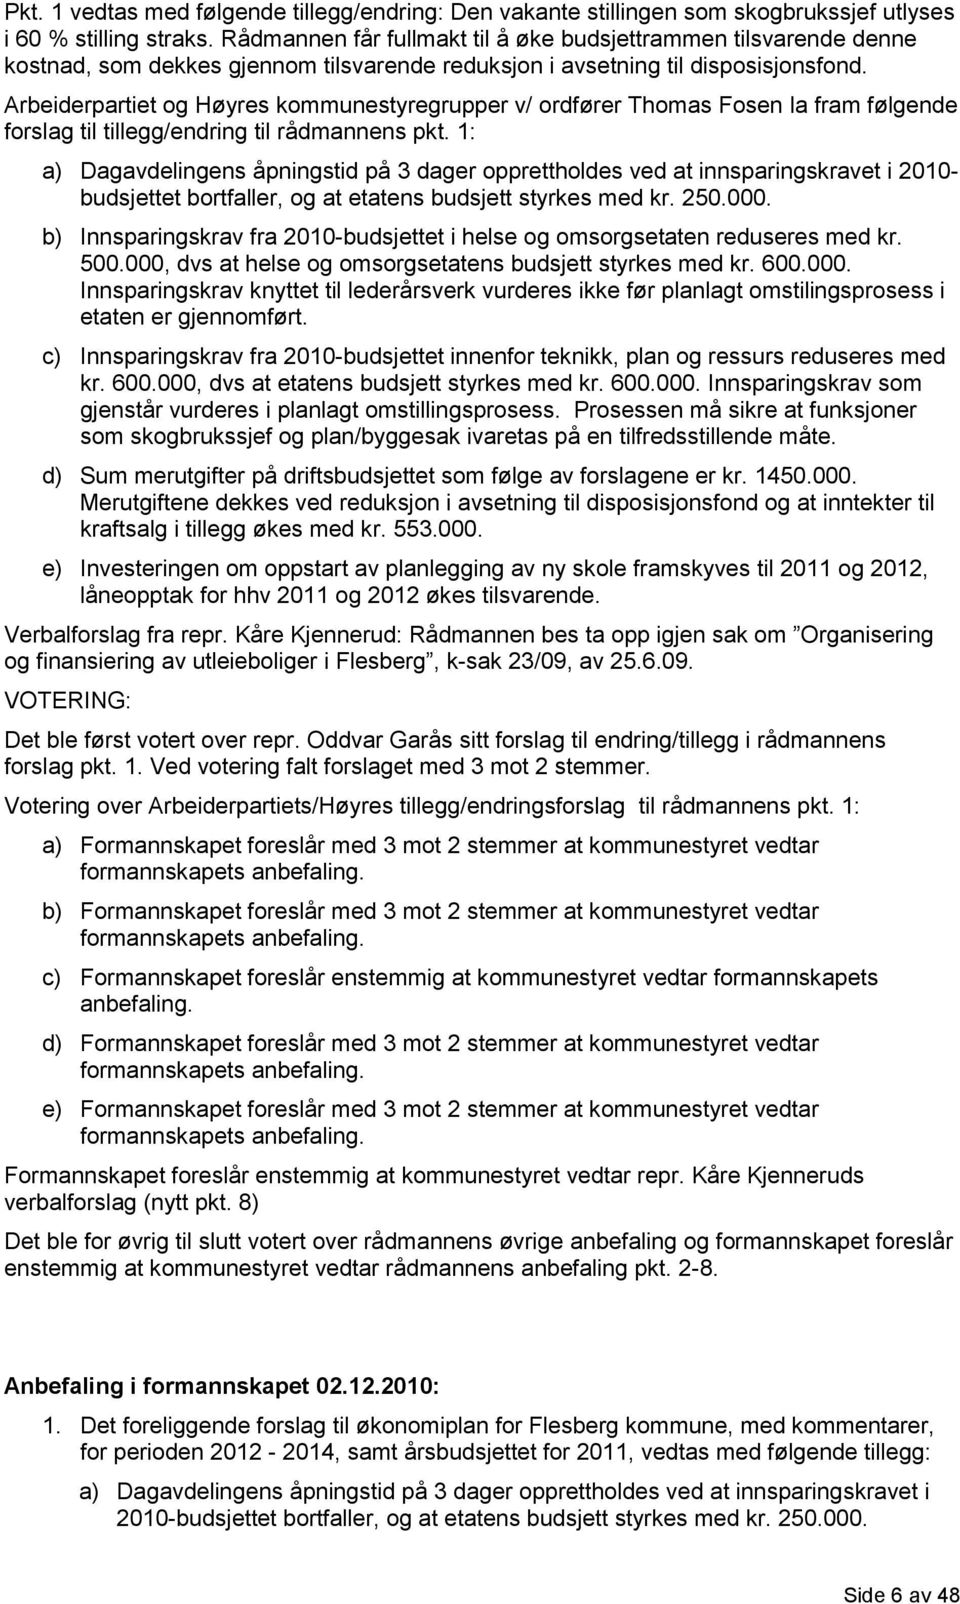 Arbeiderpartiet og Høyres kommunestyregrupper v/ ordfører Thomas Fosen la fram følgende forslag til tillegg/endring til rådmannens pkt.